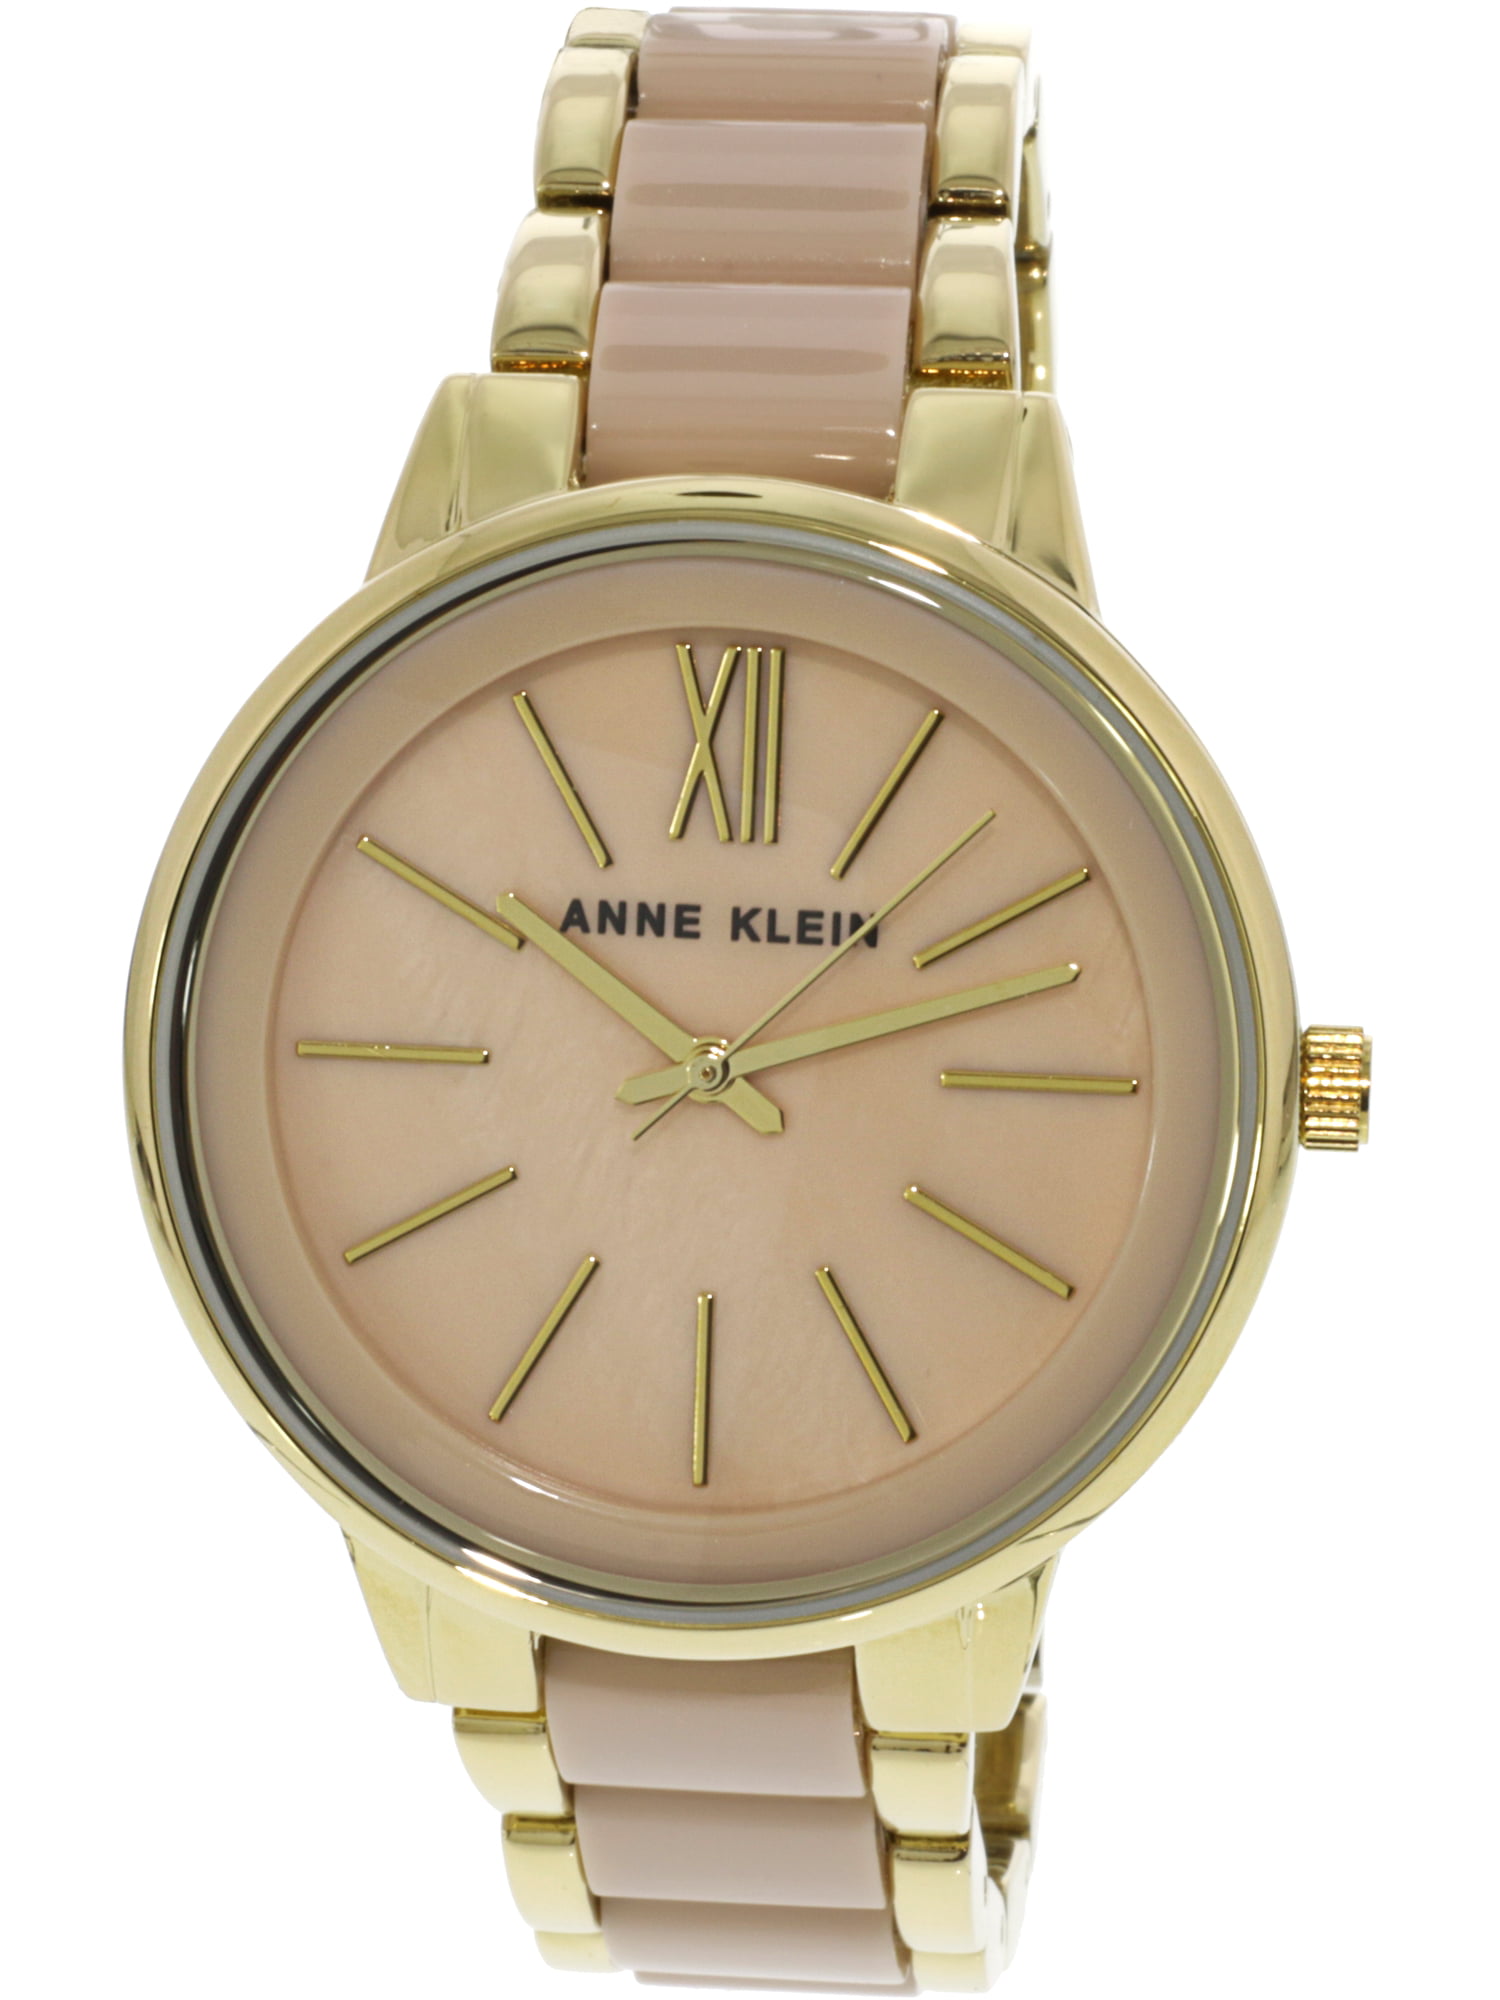 Anne Klein - Anne Klein Women's AK-1412BMGB Pink Gold Tone Stainles